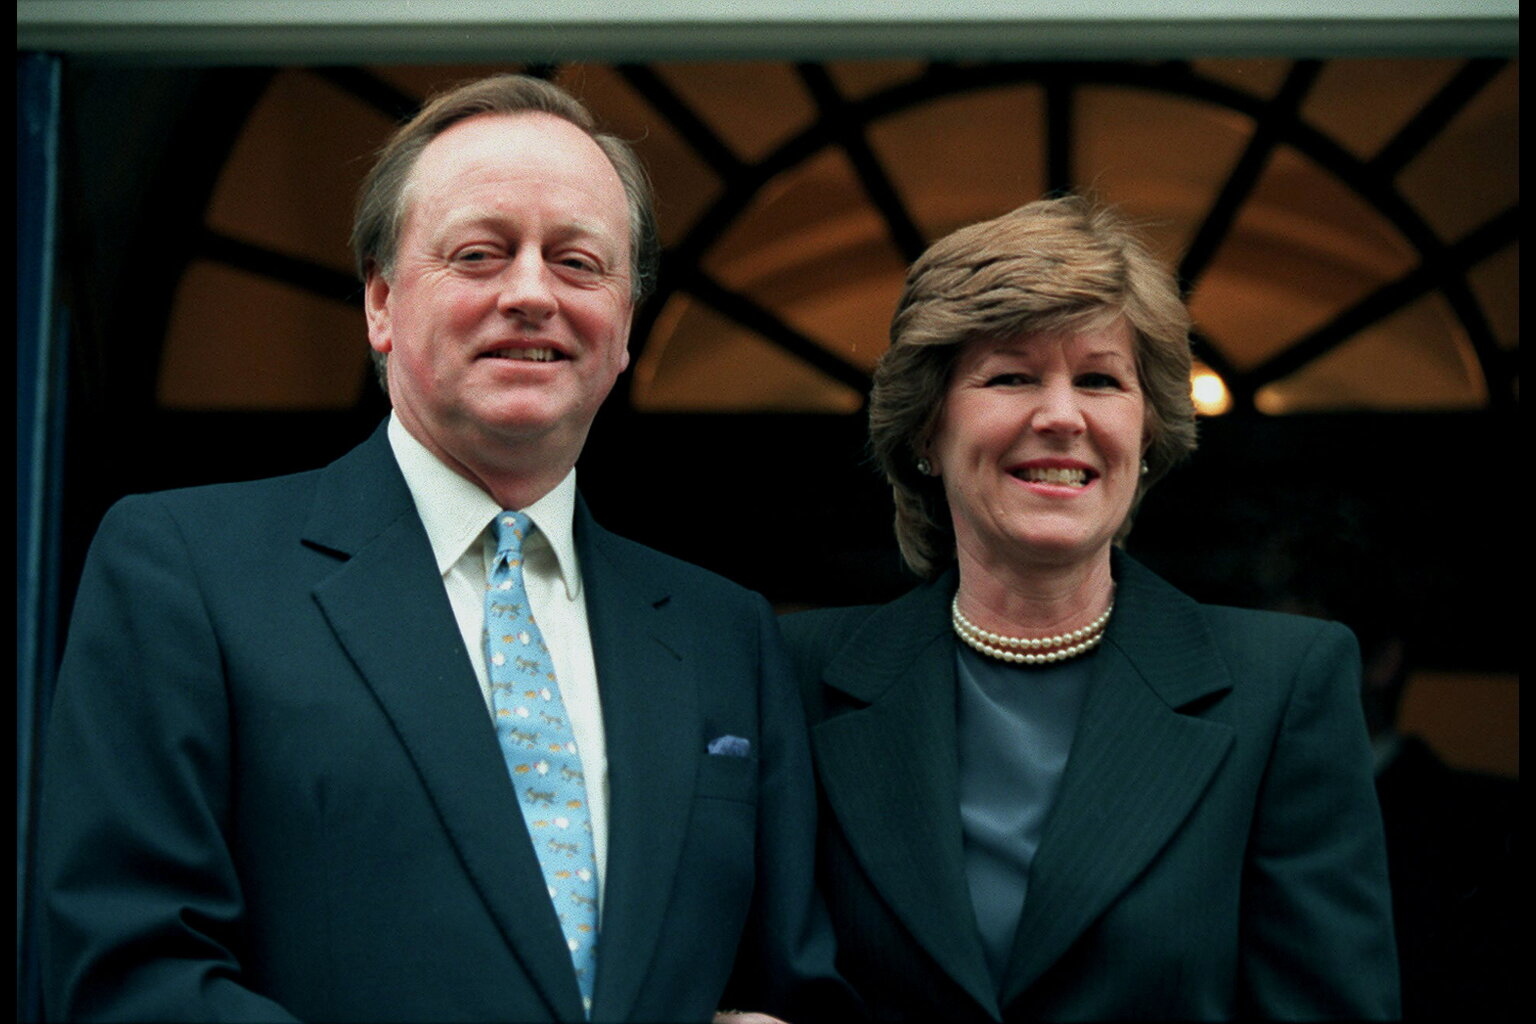 Le père du garçon et sa nouvelle épouse, Rosemary Pitman, après leur mariage le 7 février 1996. | Source : Getty Images